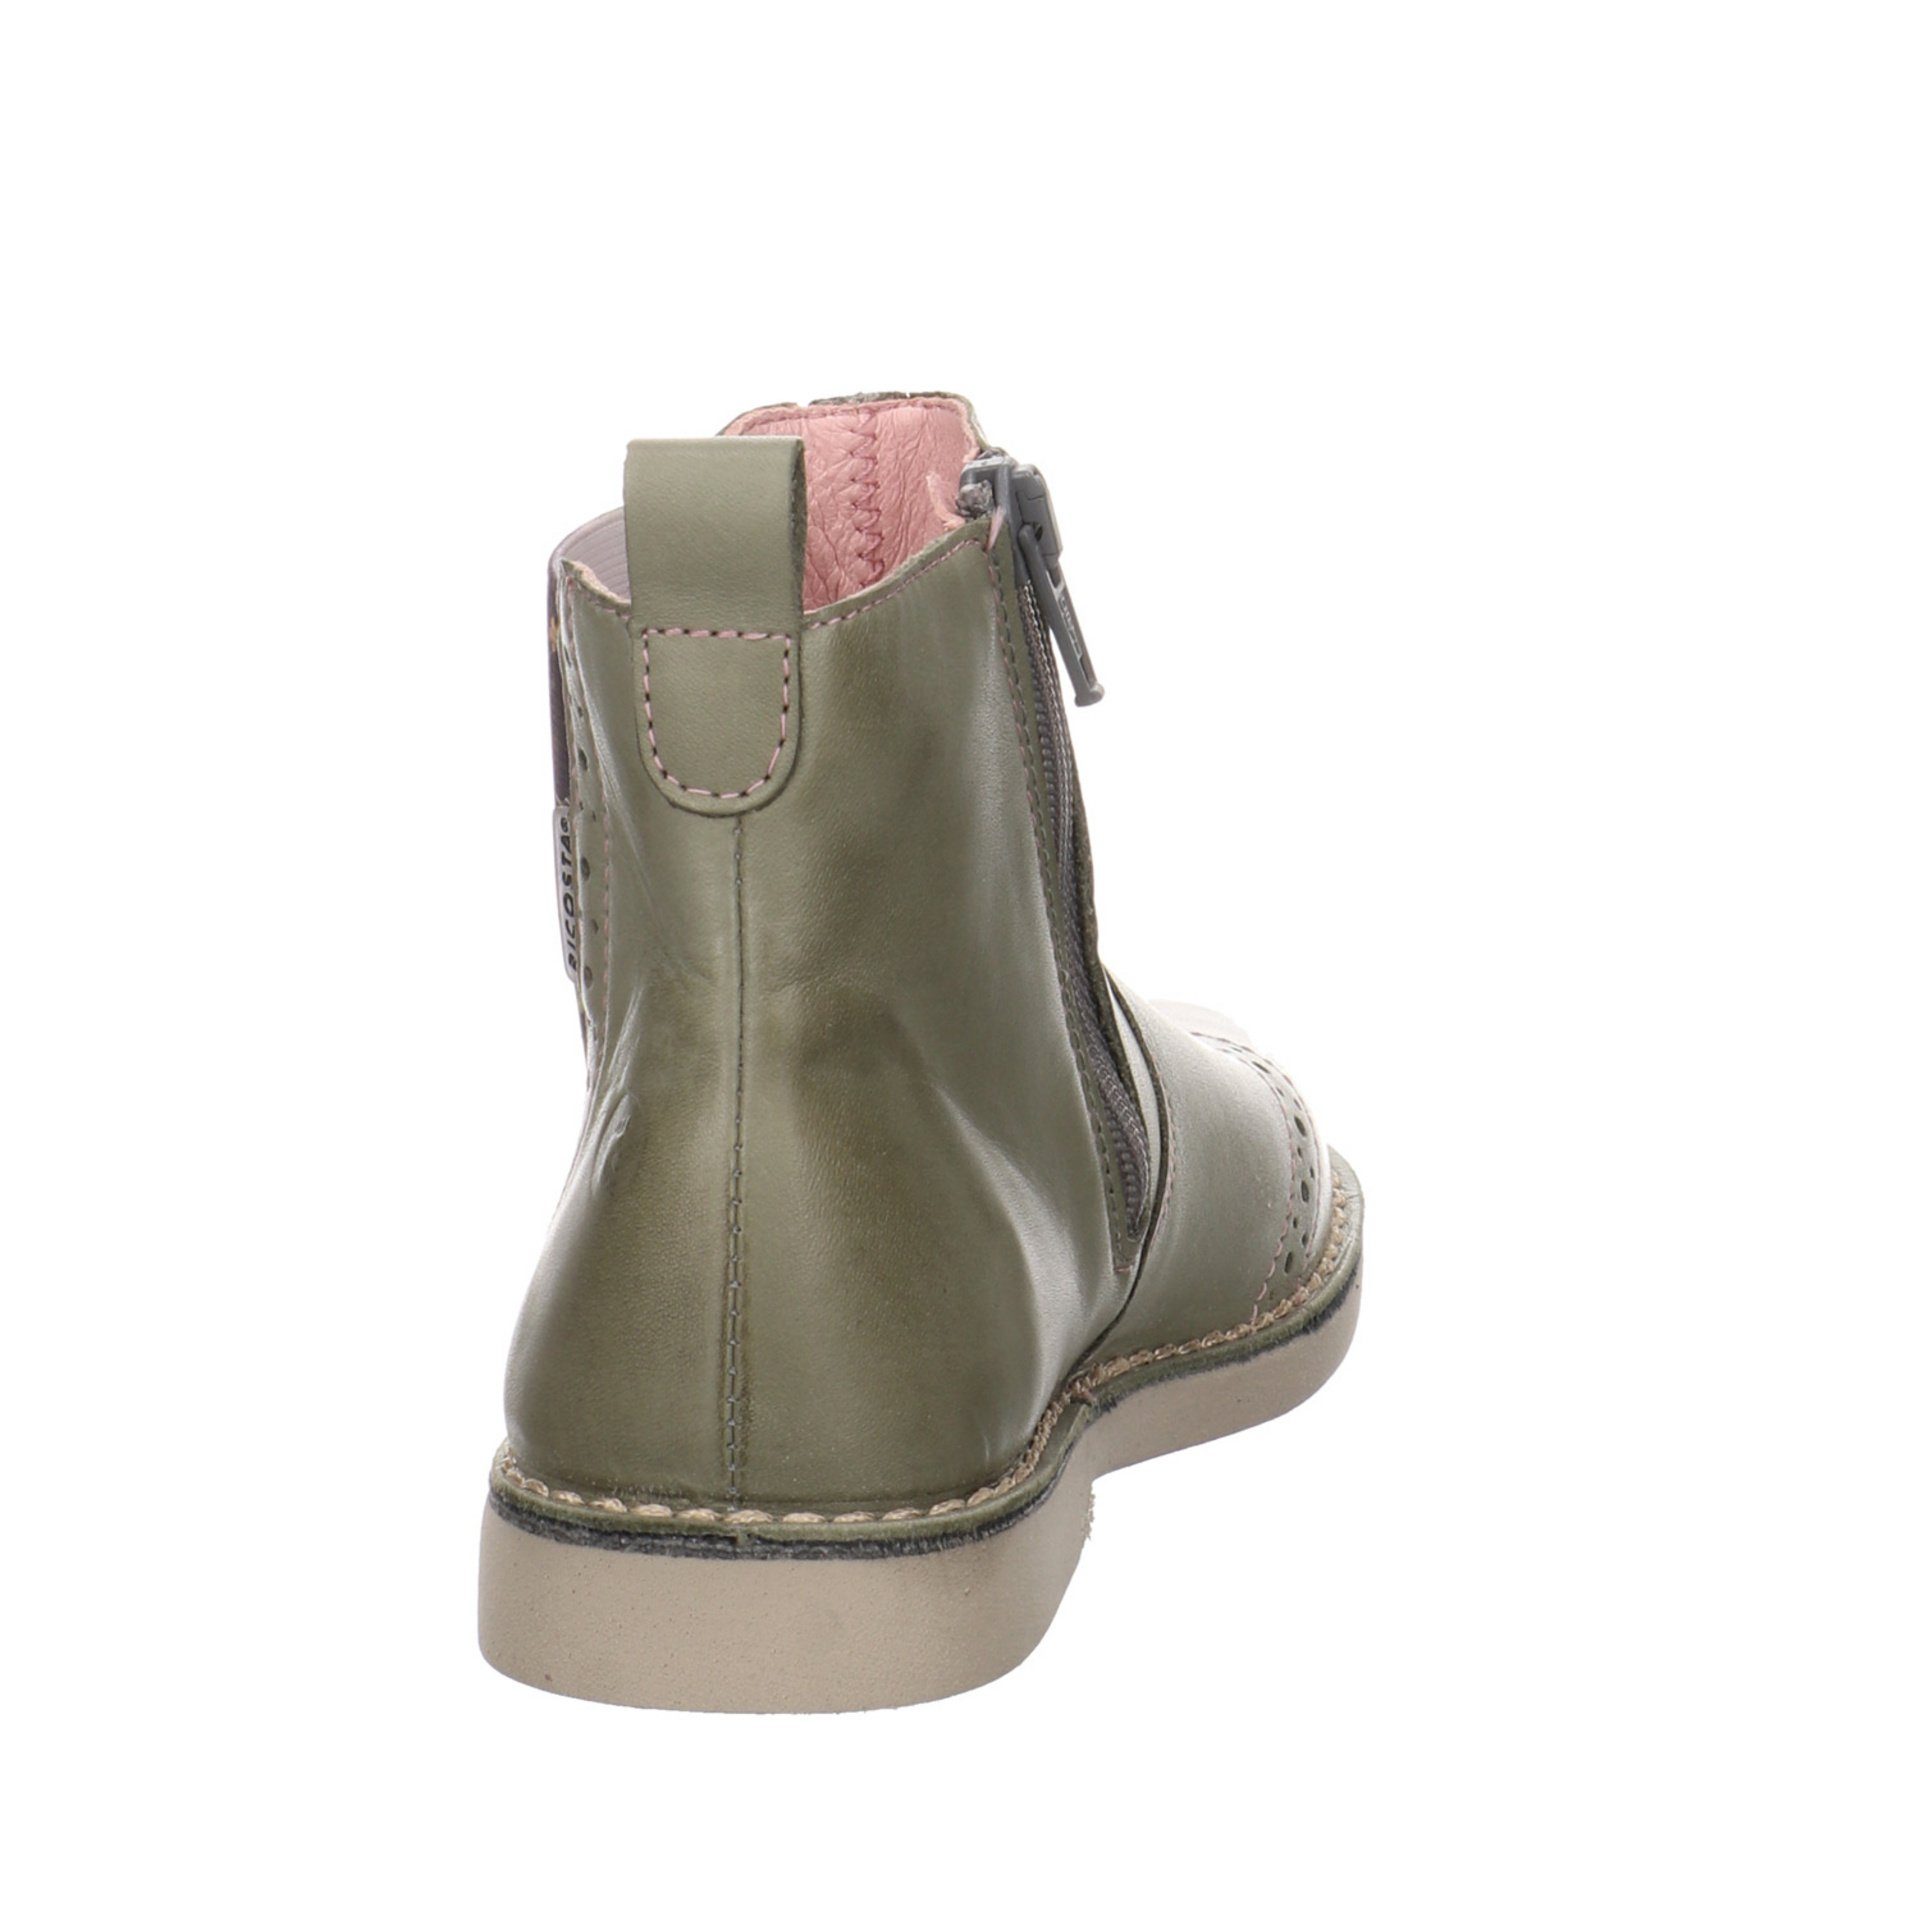 Ricosta Mädchen Boots Chelsea Glattleder Stiefelette (540) Schuhe Dallas Stiefel eukalyptus/Blume